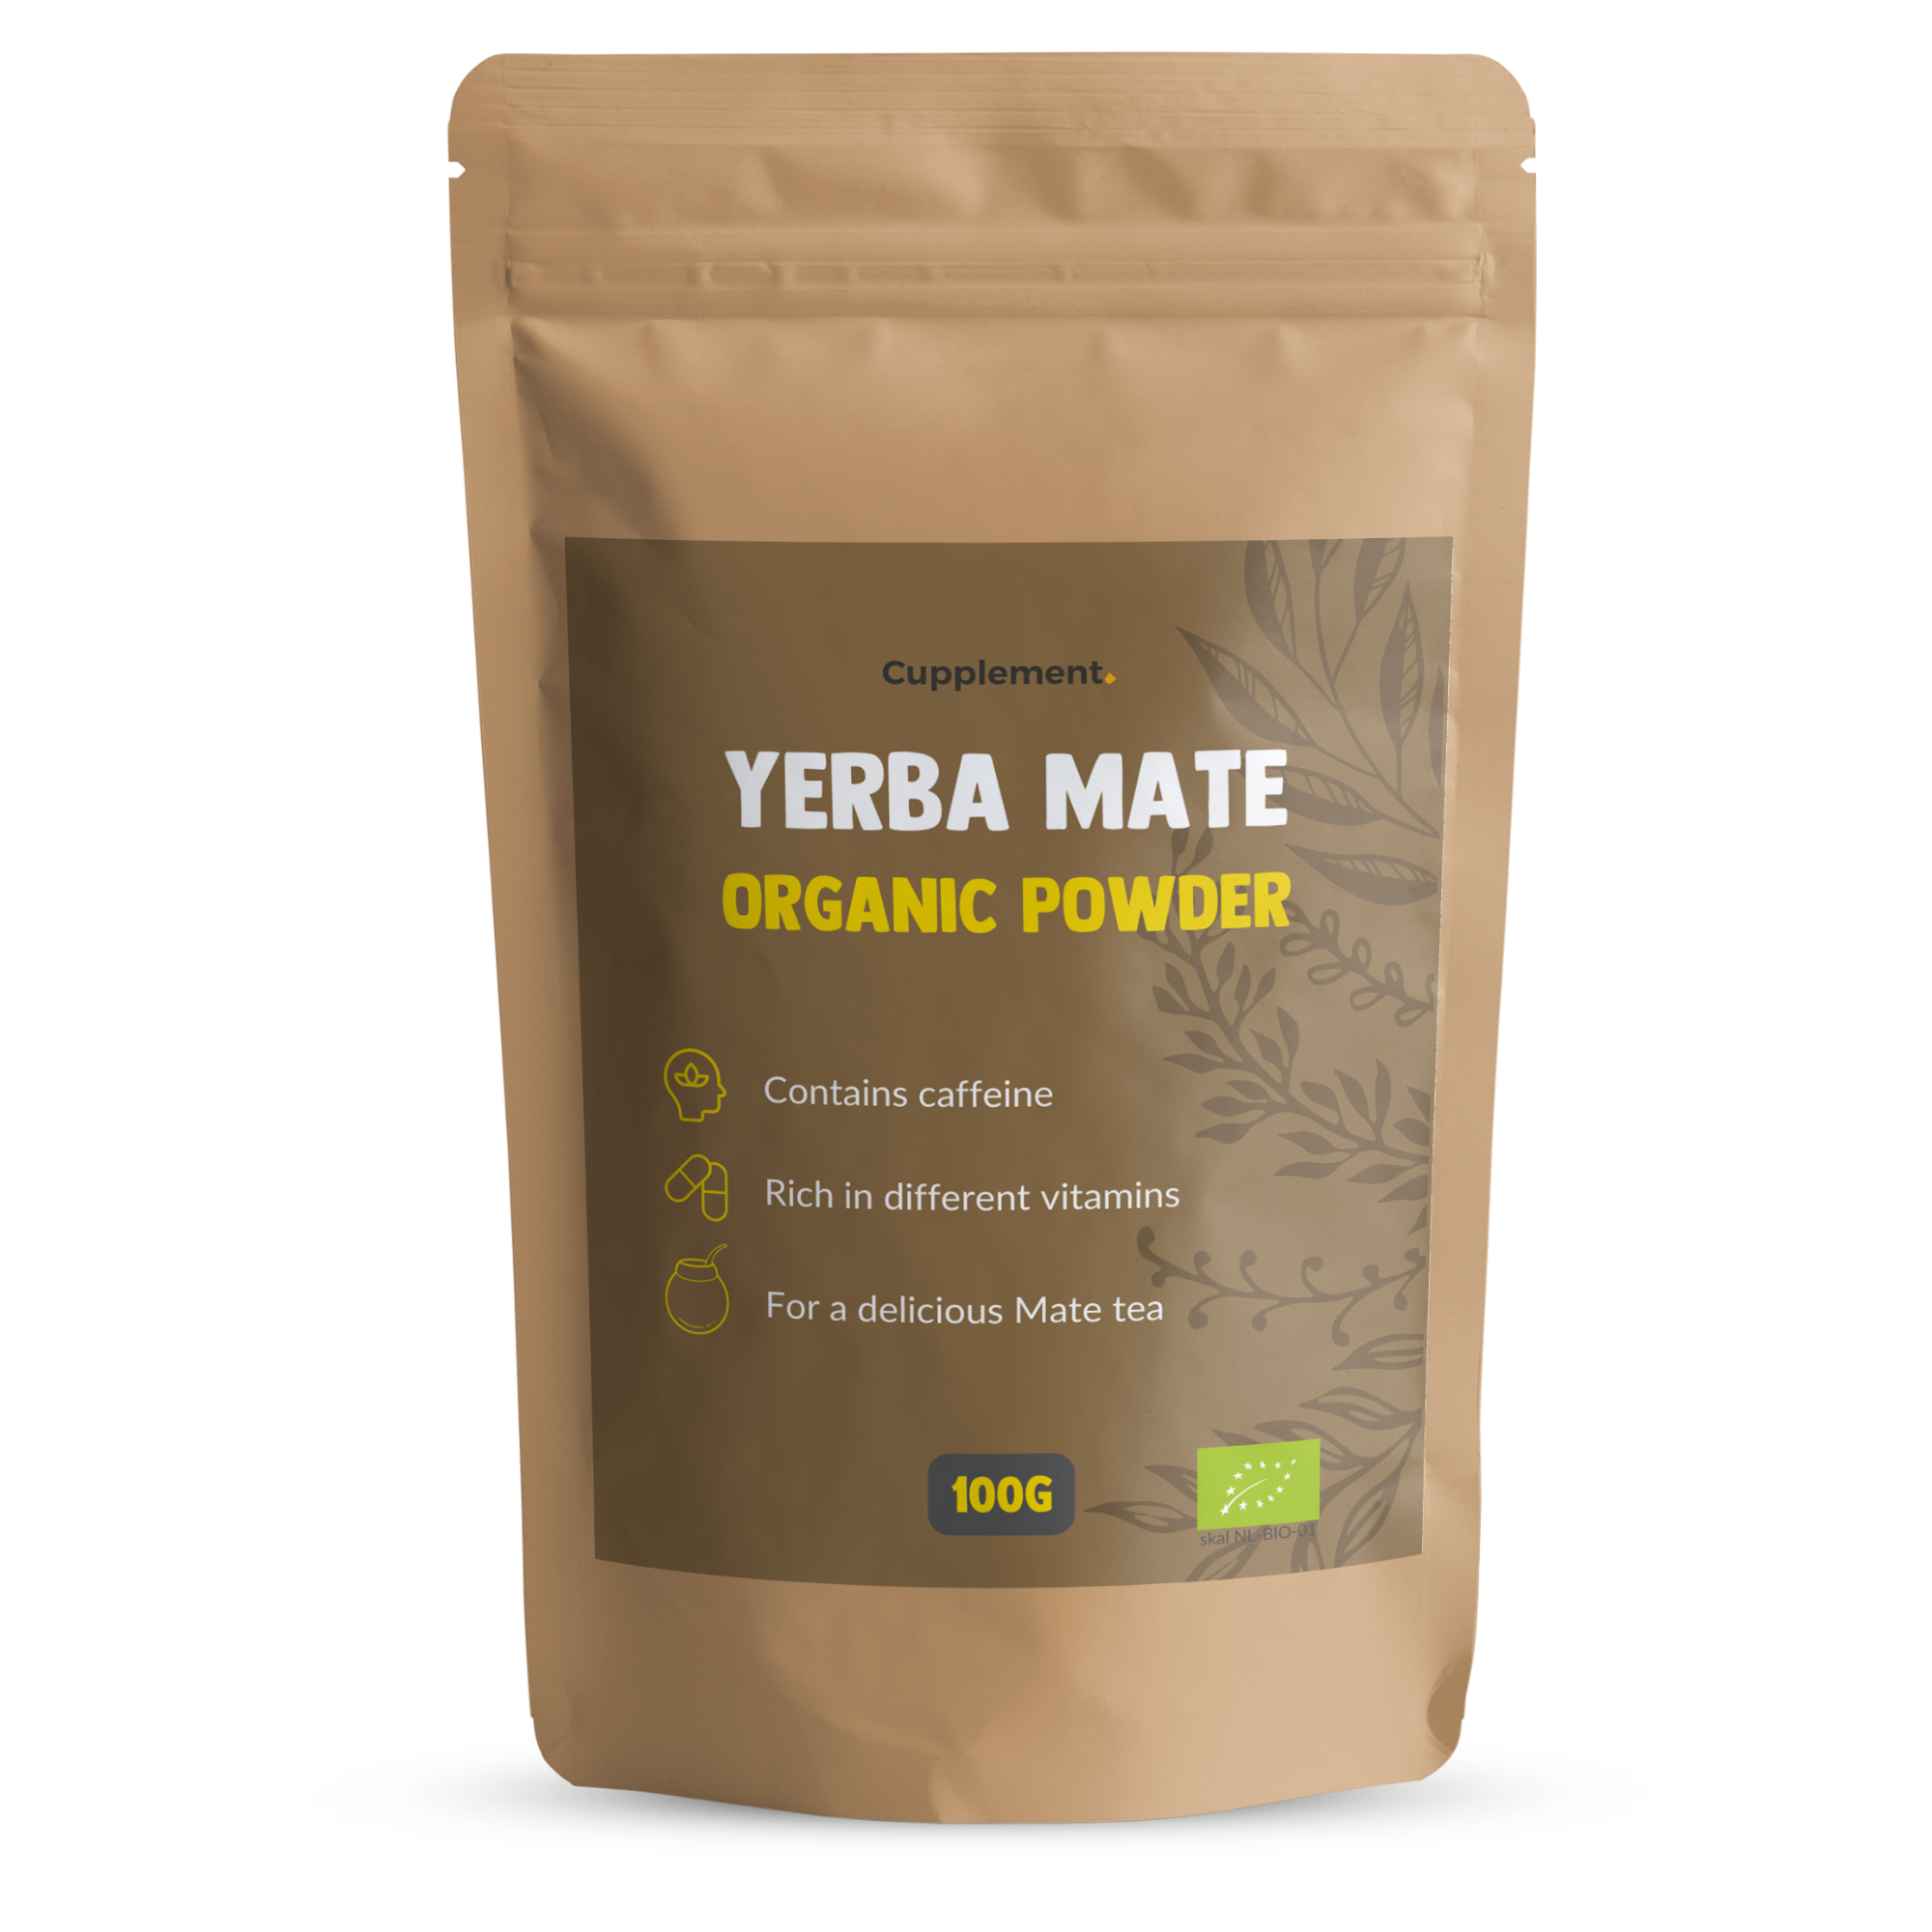 Yerba Mate powder